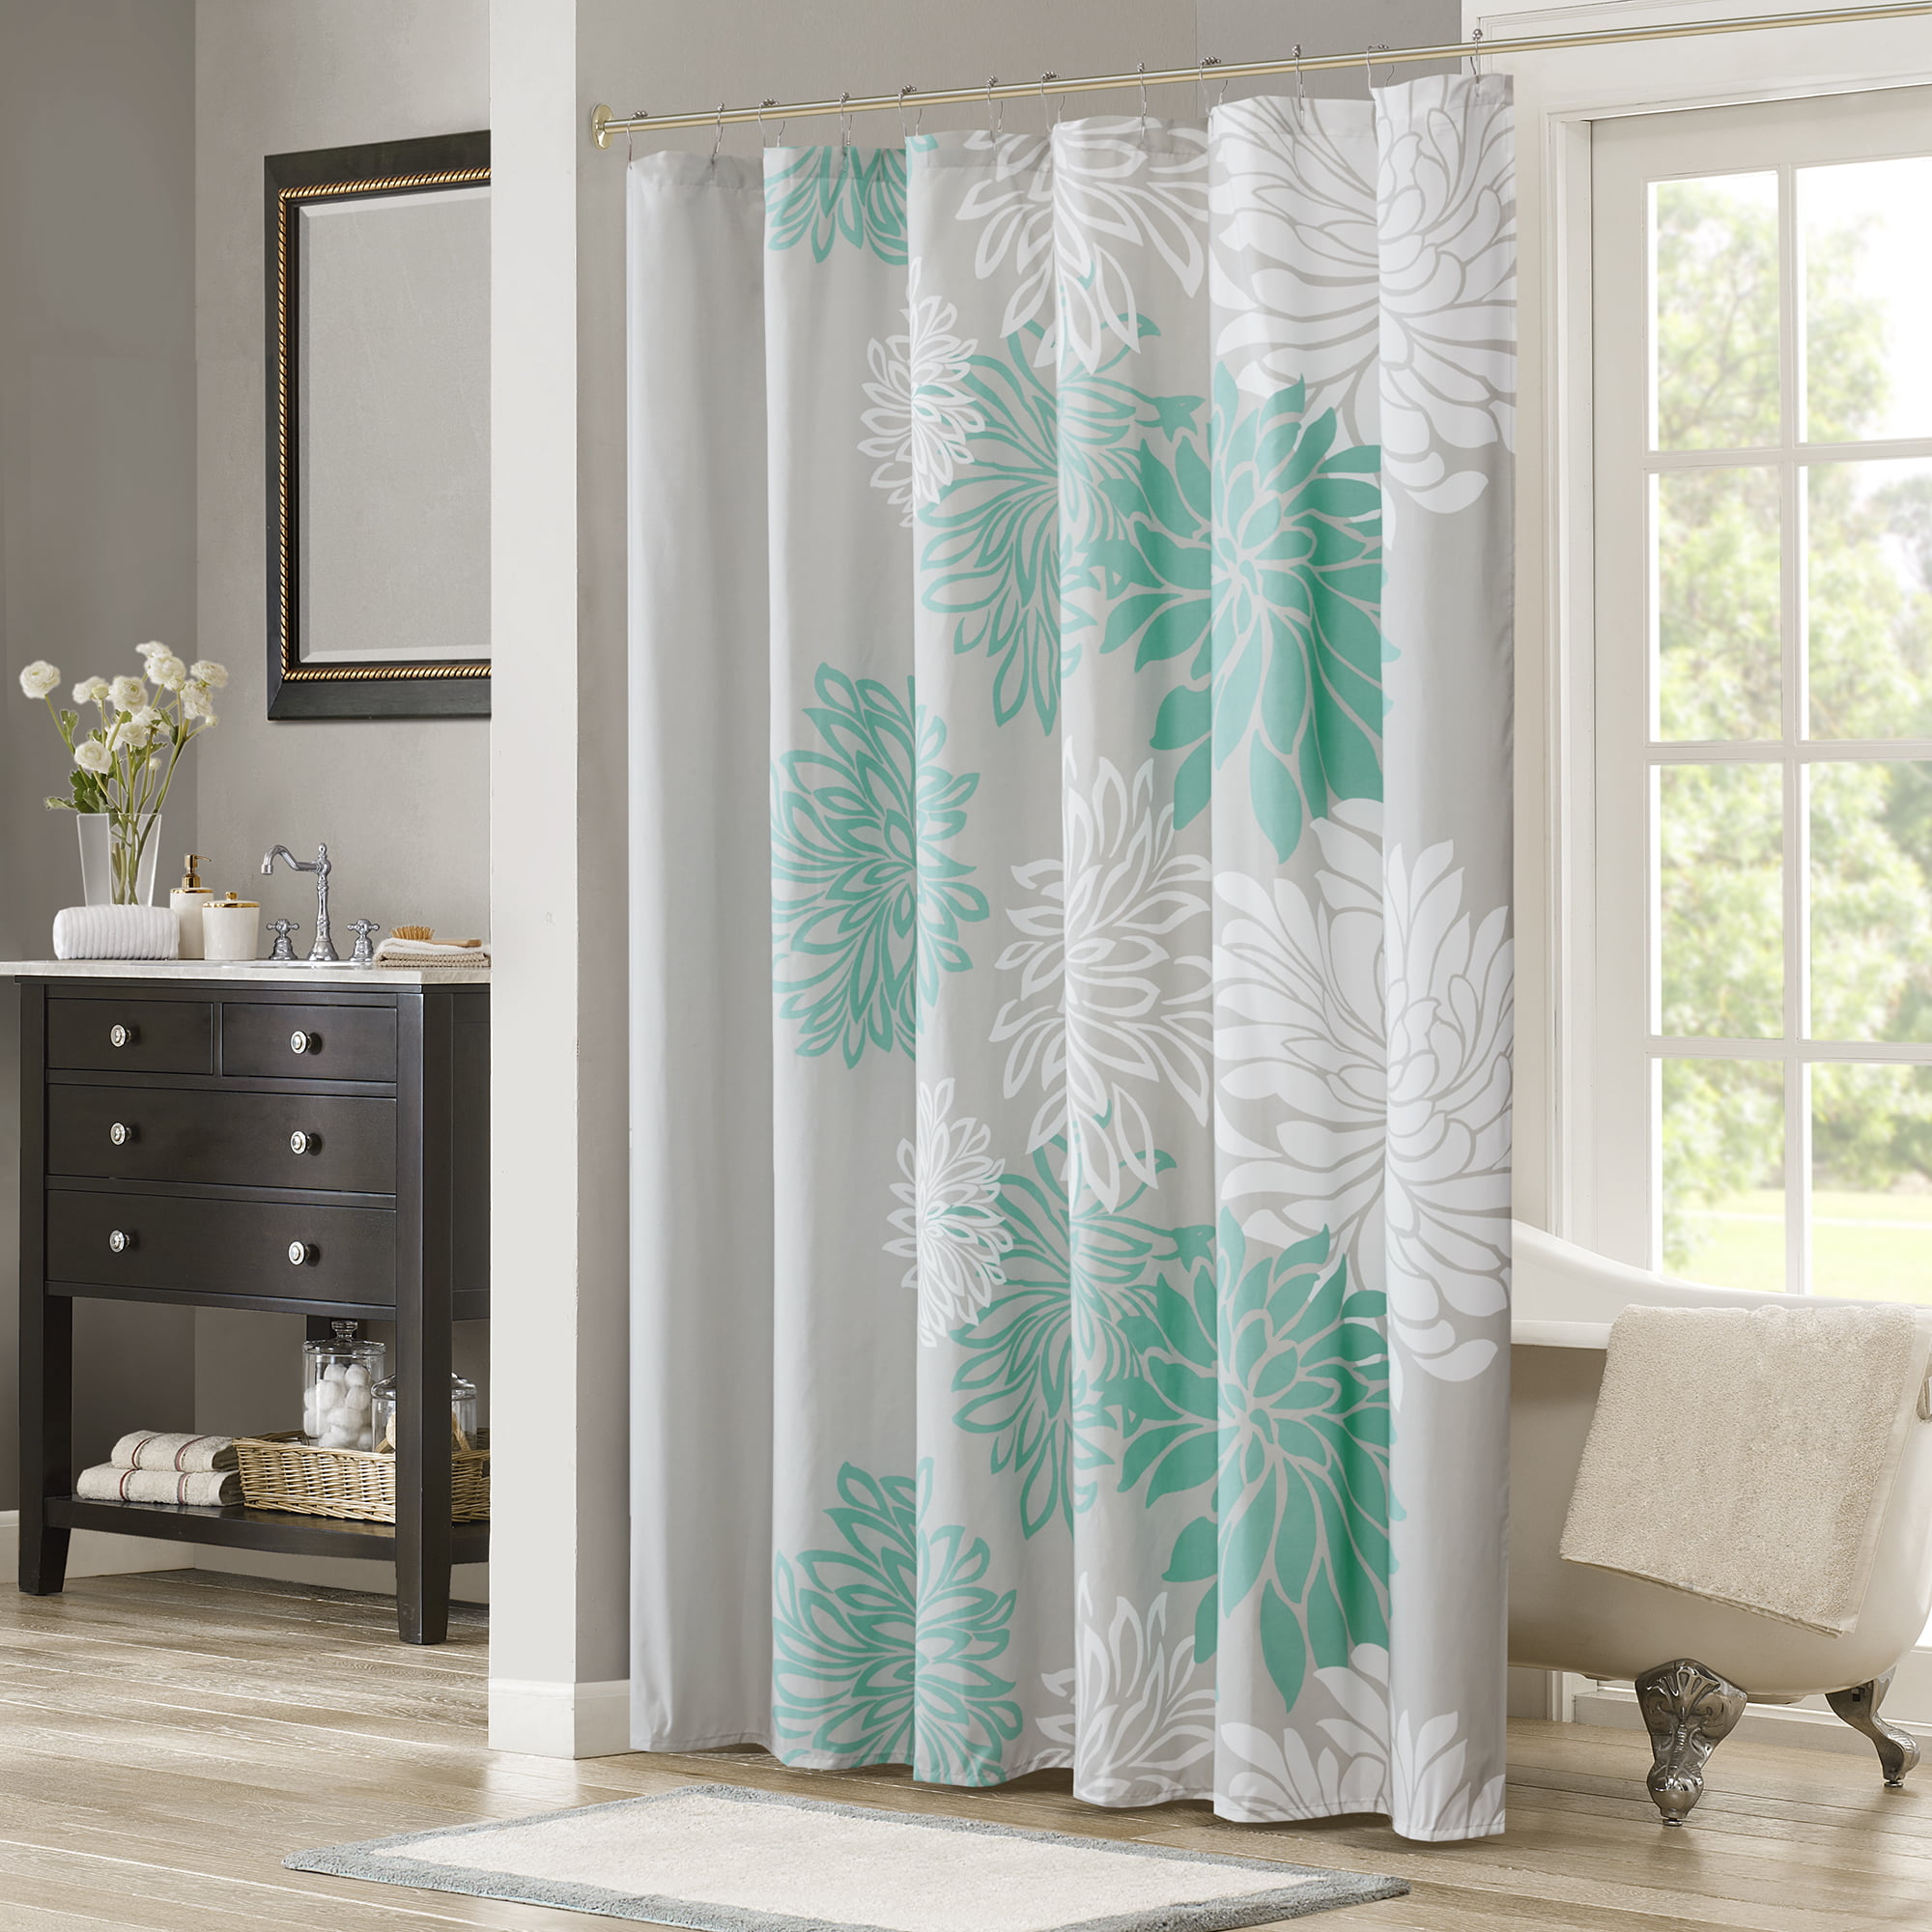 Details about   VCNY Bohemian Aqua Blue Orange Fabric Shower Curtain Floral Eclectic Design 